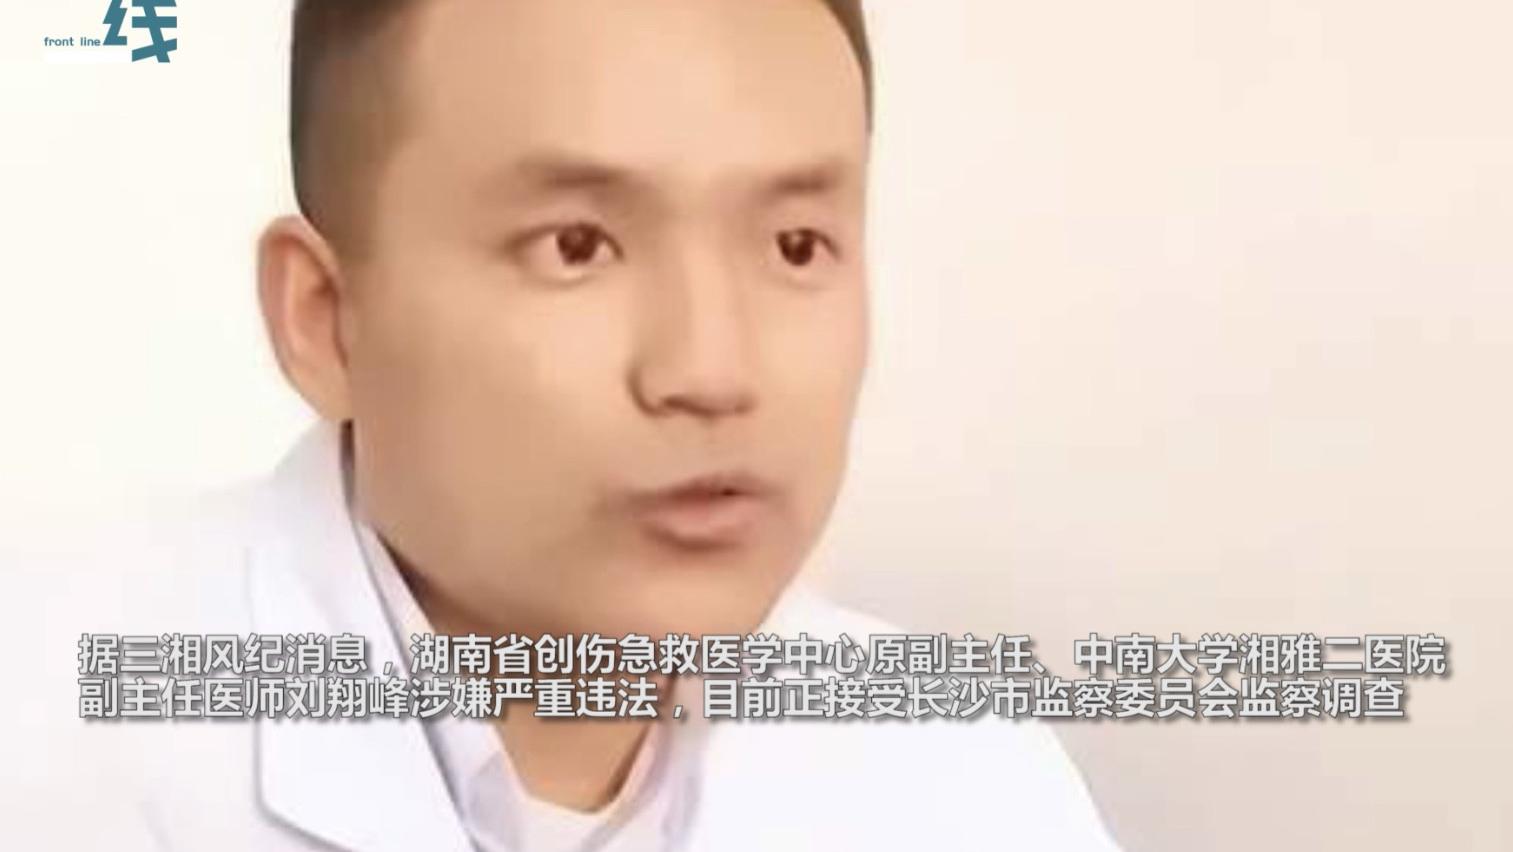 湘雅刘翔峰这样的医护人员不被判死刑，那就是对患者判死刑